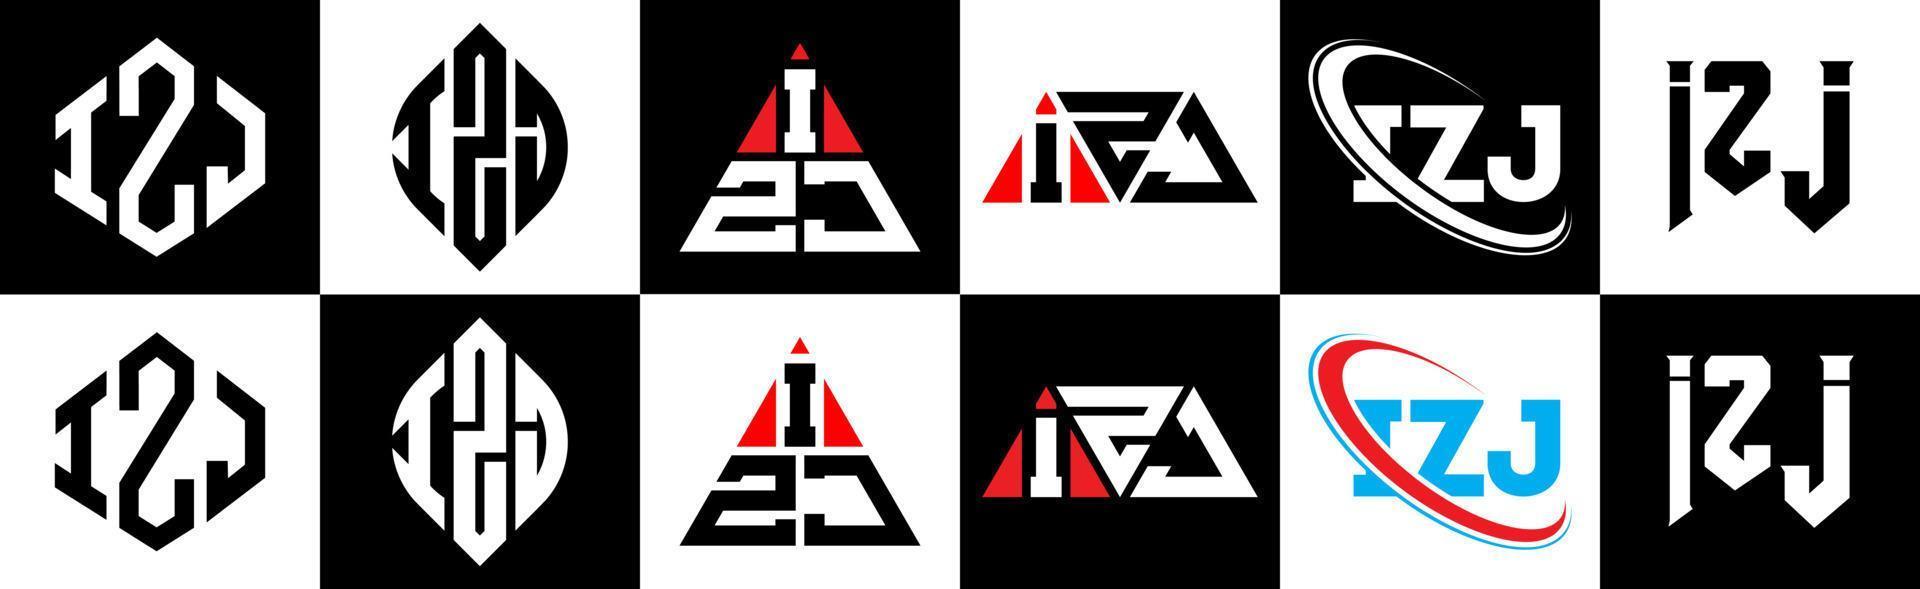 izj-Buchstaben-Logo-Design in sechs Stilen. izj polygon, kreis, dreieck, sechseck, flacher und einfacher stil mit schwarz-weißem buchstabenlogo in einer zeichenfläche. izj minimalistisches und klassisches Logo vektor